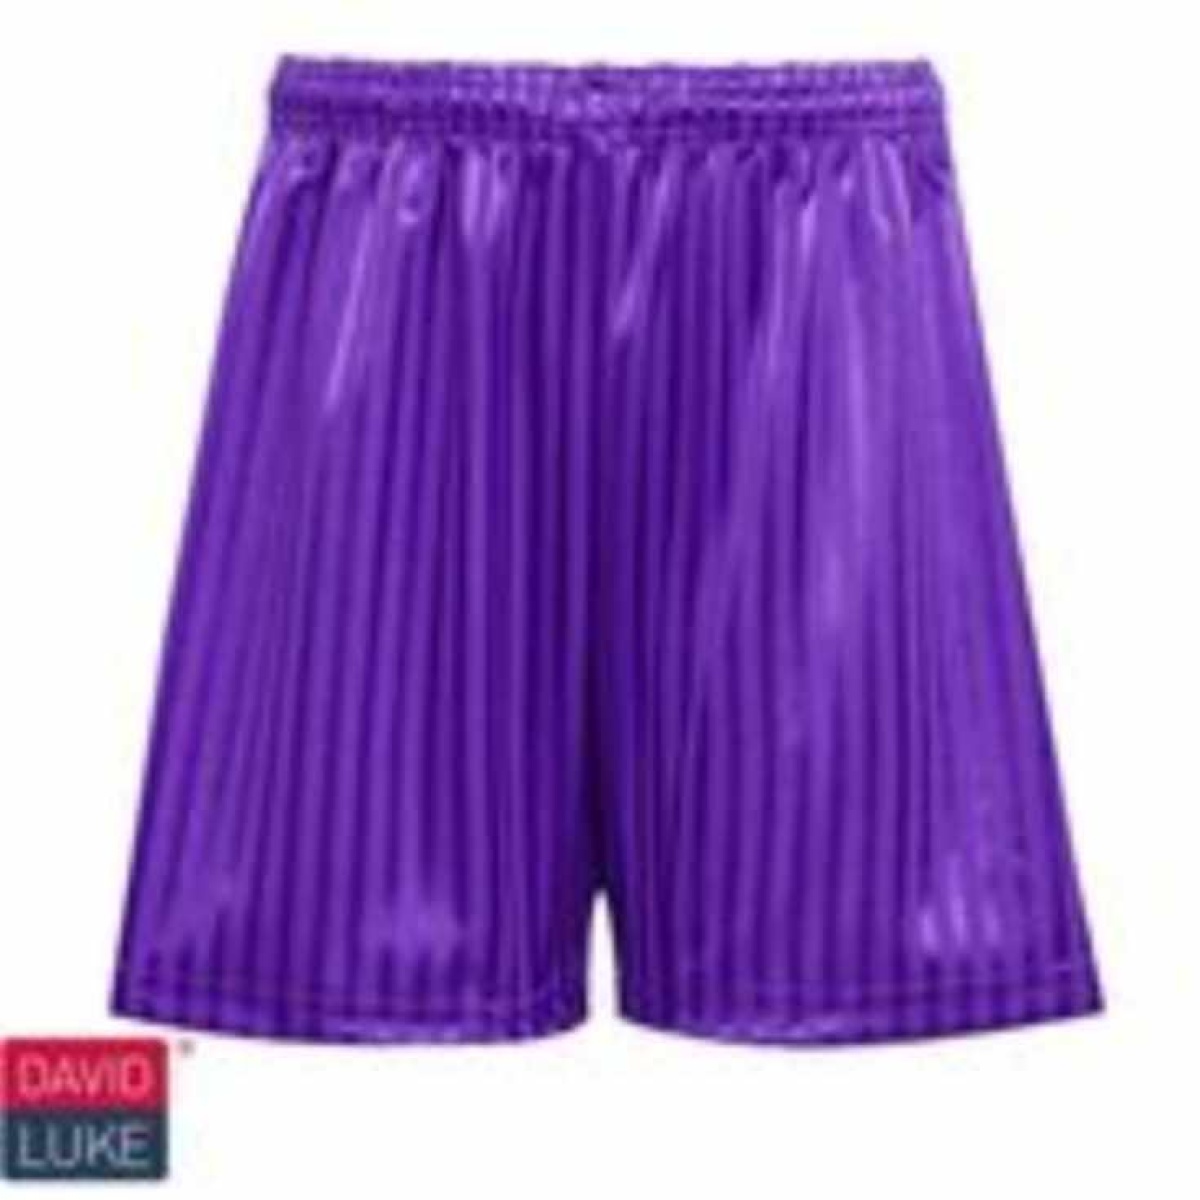 PE Shadow Stripe Short - Purple - David Luke, Kents Hill Infants School, PE Wear